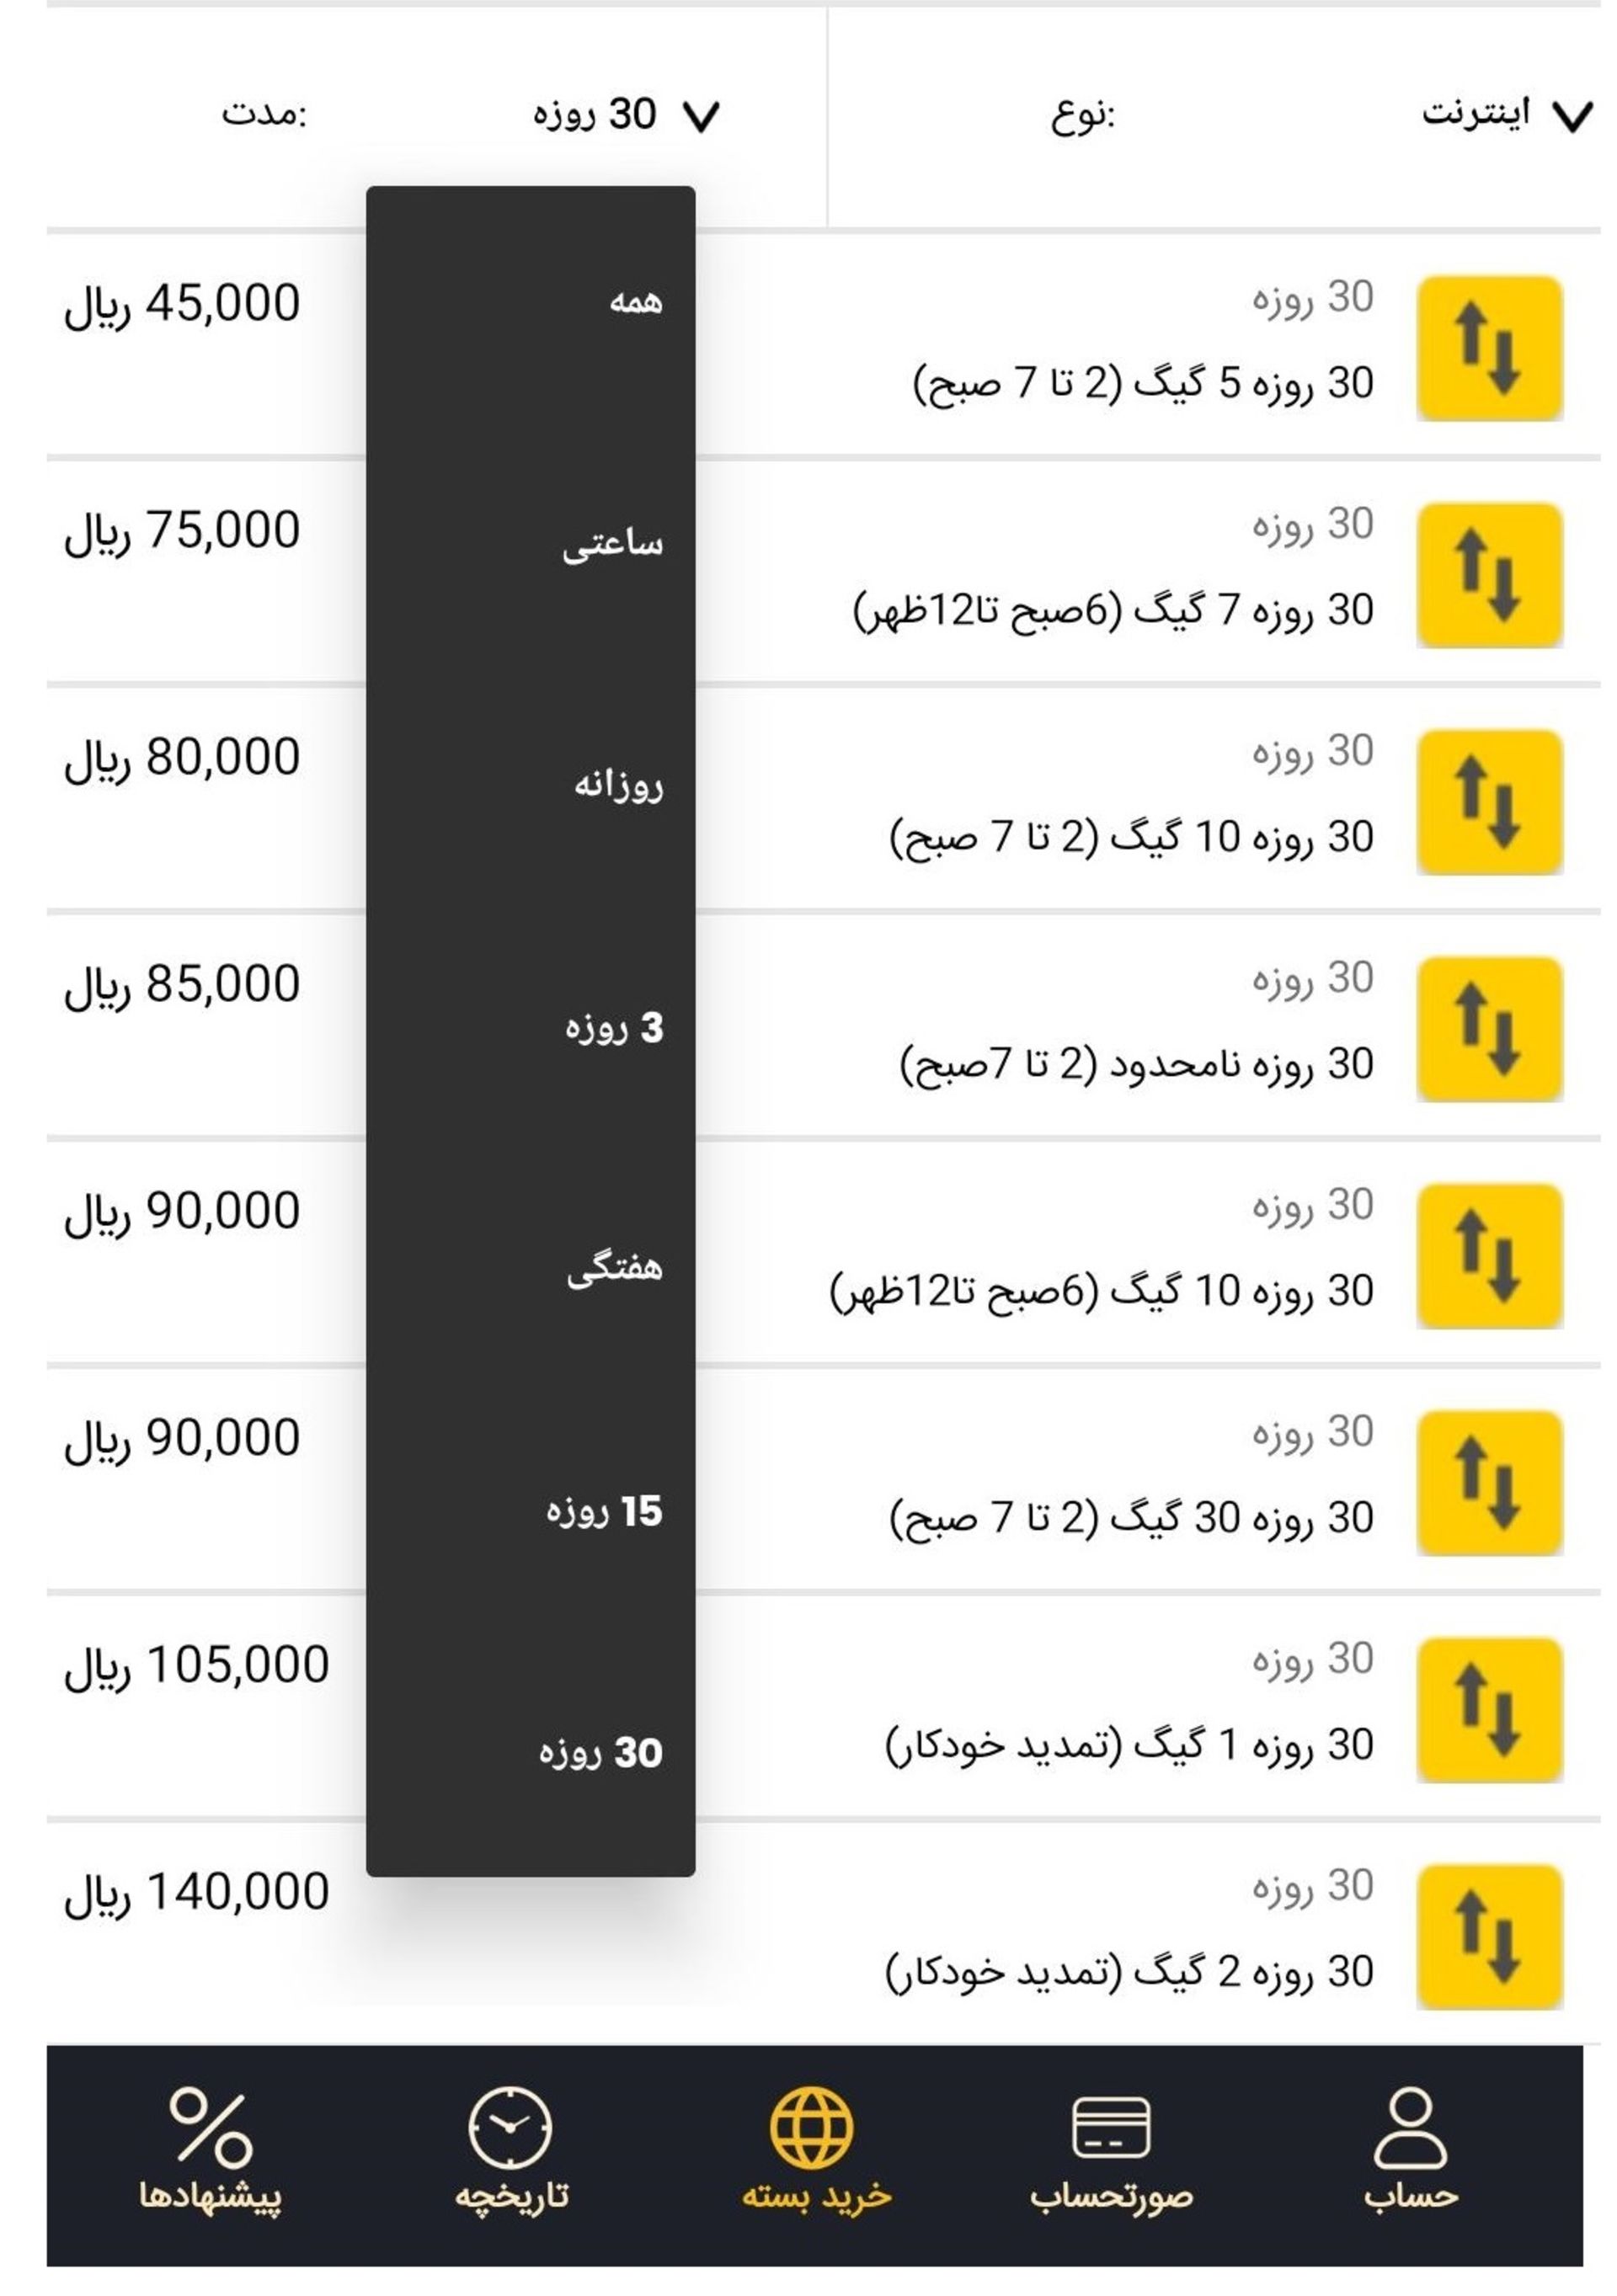 فهرست خرید بسته های افزایشی ایرانسل از اپلیکیشن